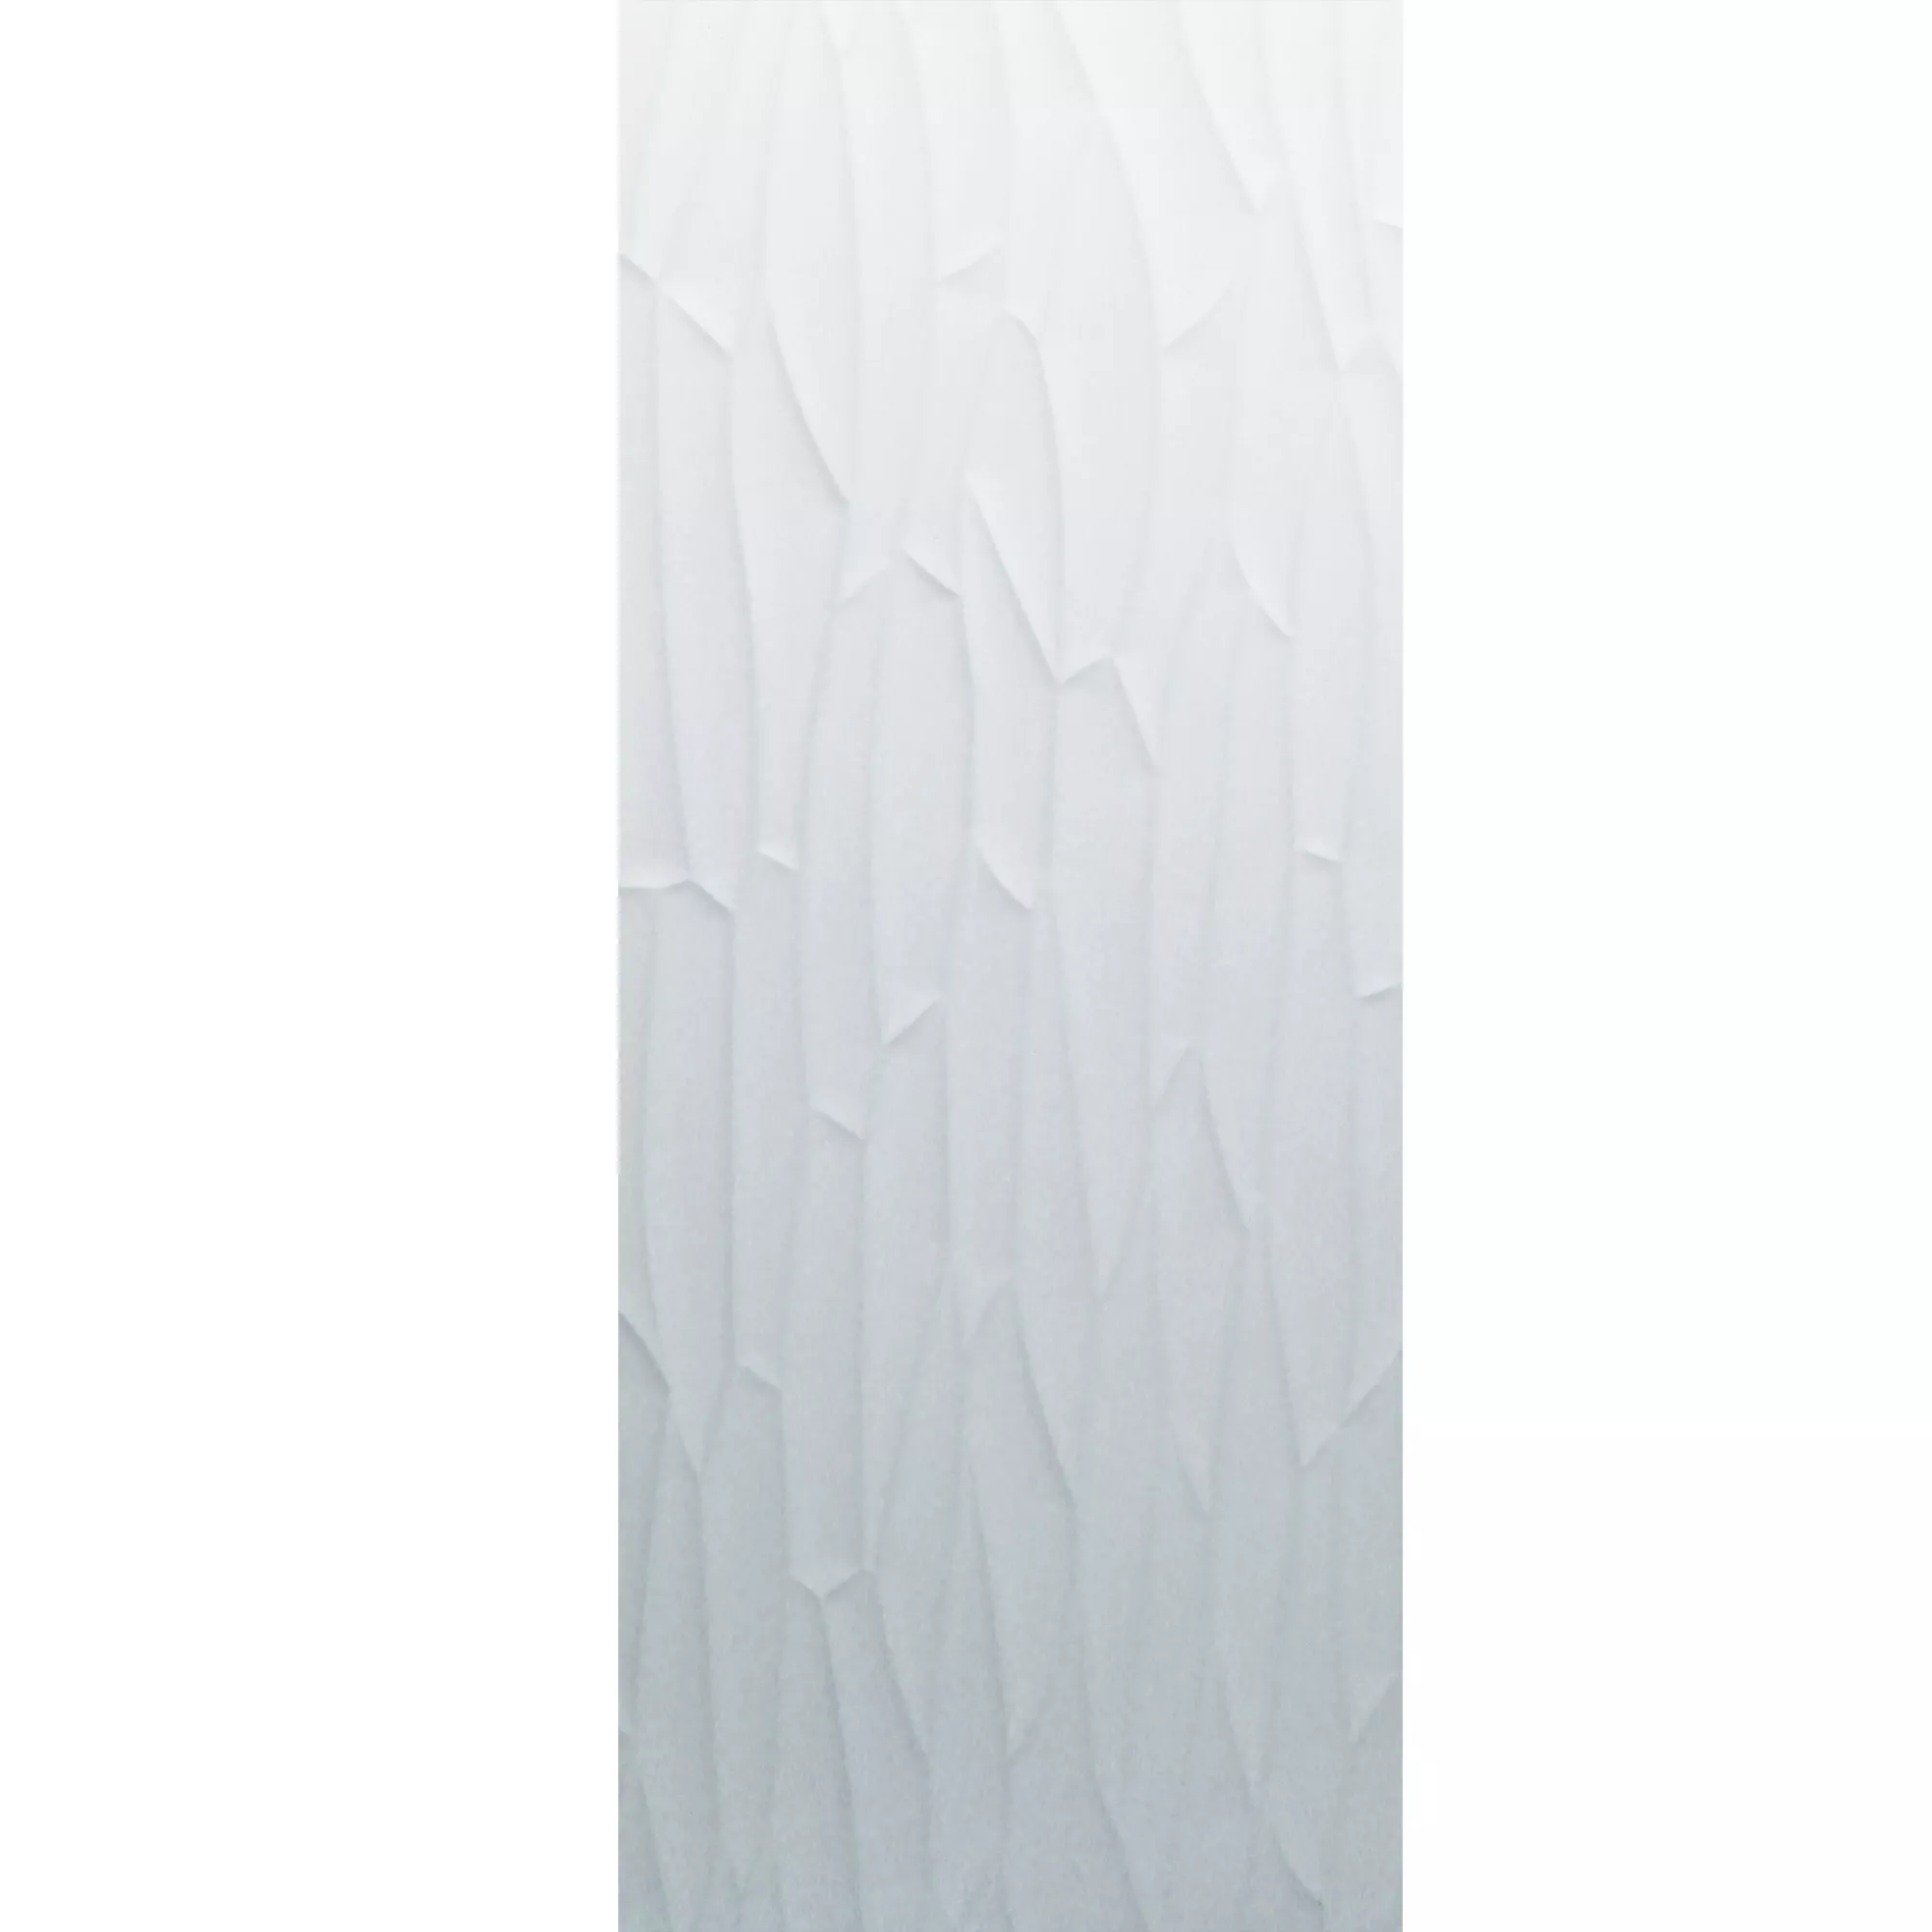 Wall Tiles Schönberg White Mat 40x120cm Decor Tile